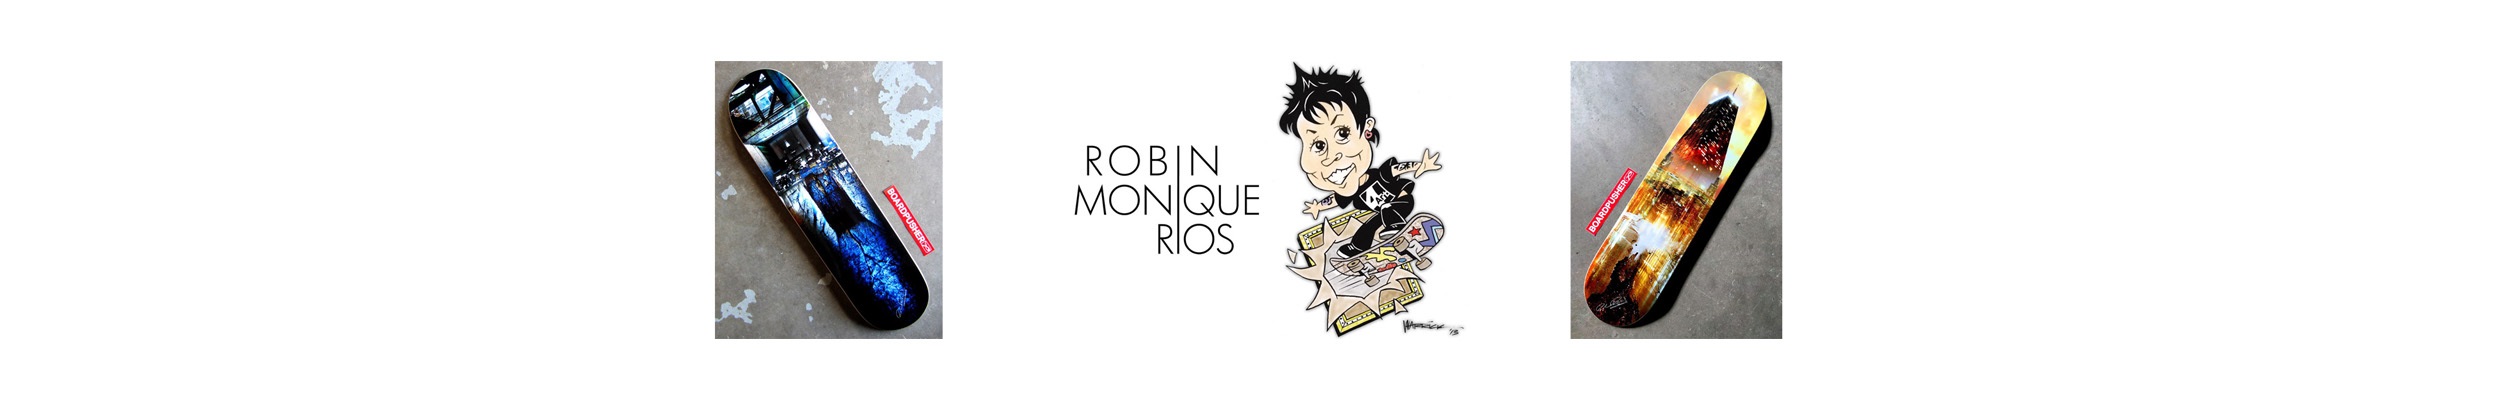 Robin Monique Rios